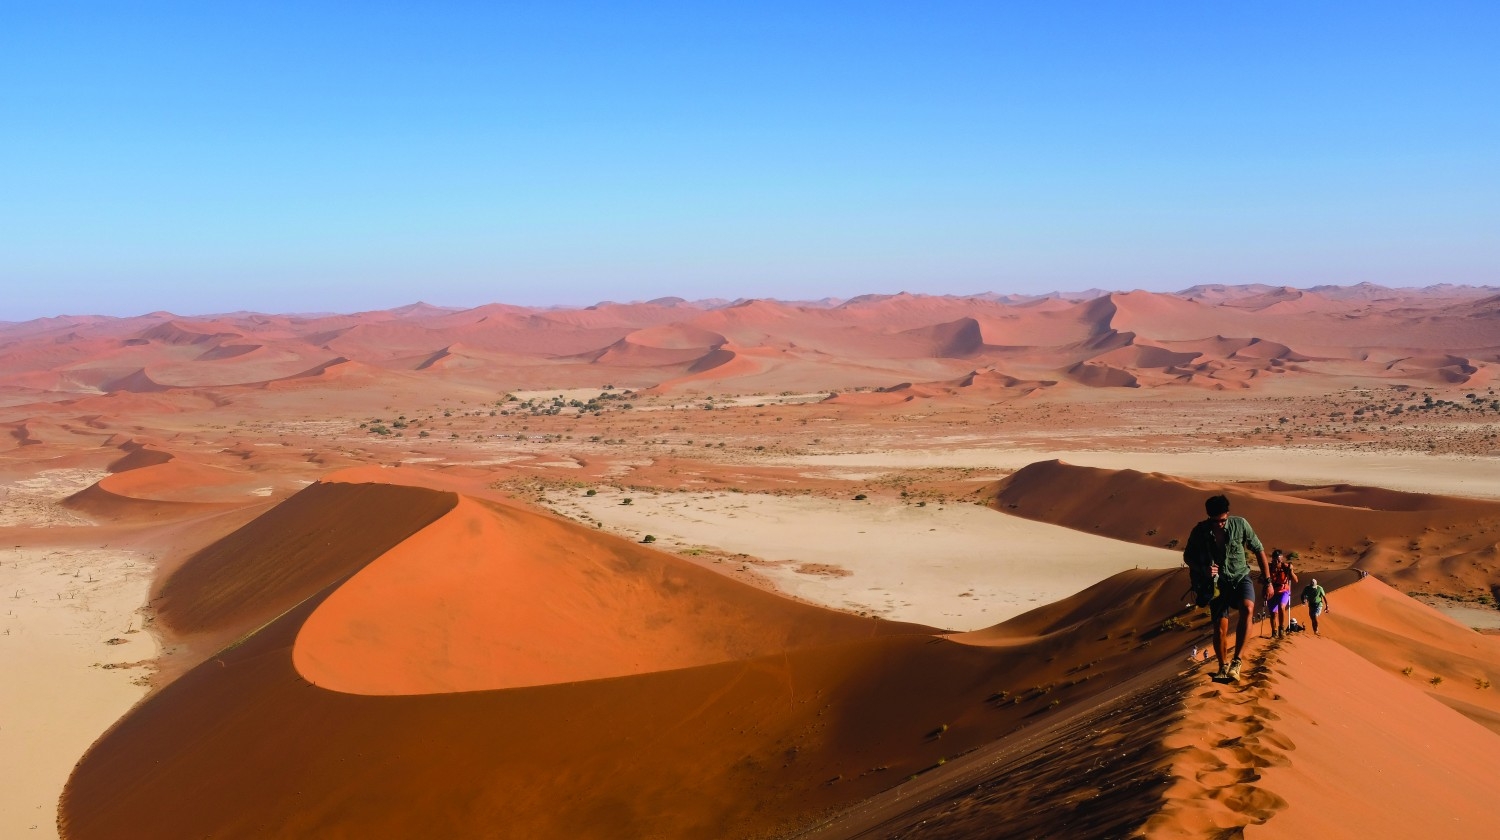 Điểm danh 5 cồn cát cao nhất thế giới